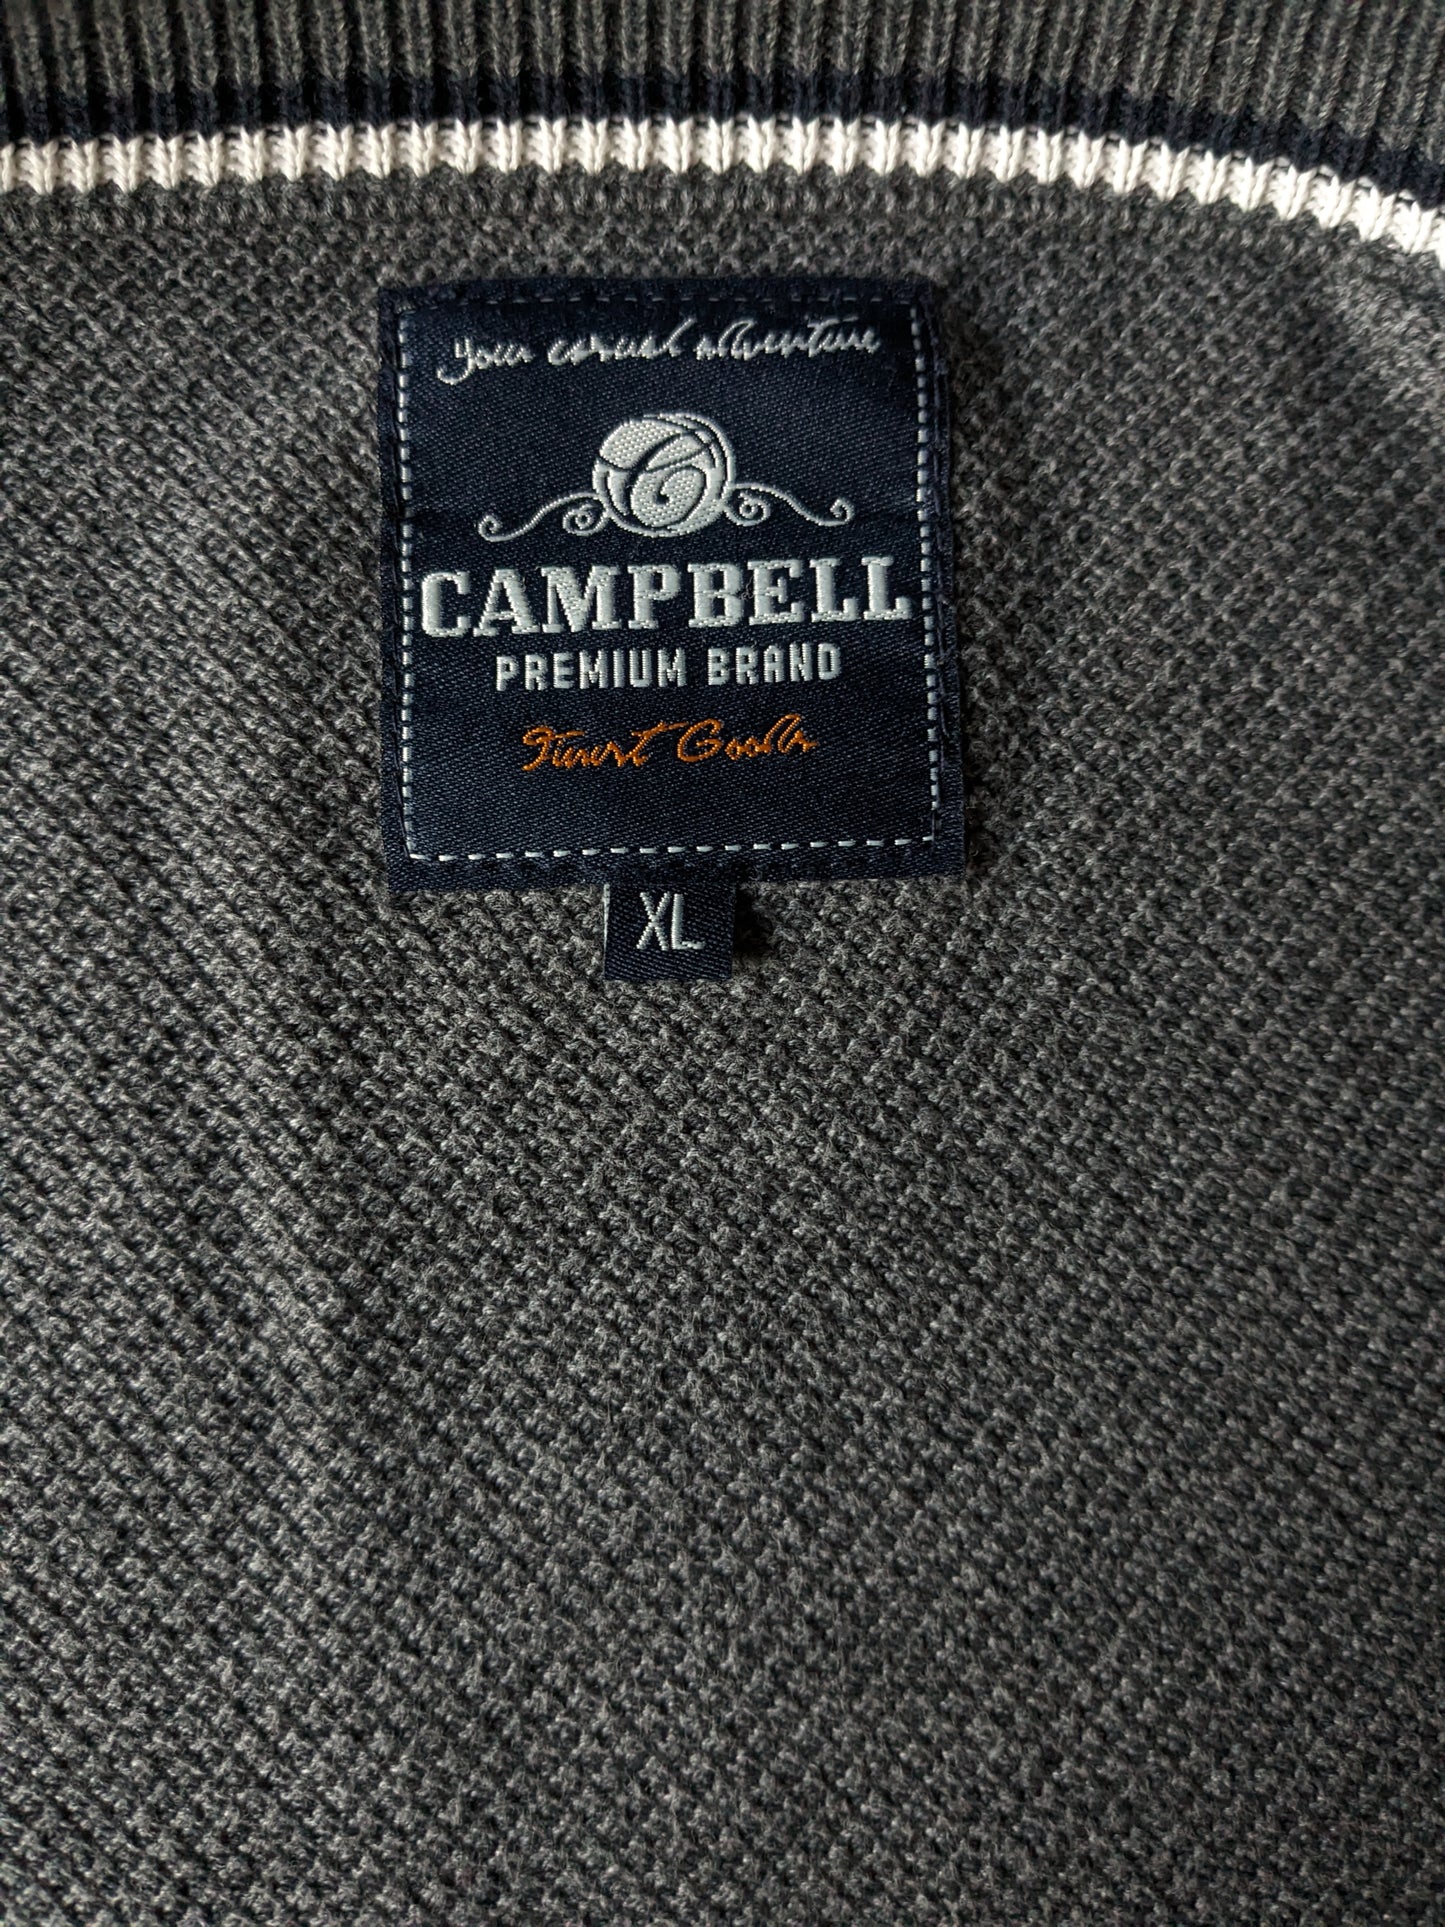 Campbell Vest. Colorato grigio scuro. Taglia XL.